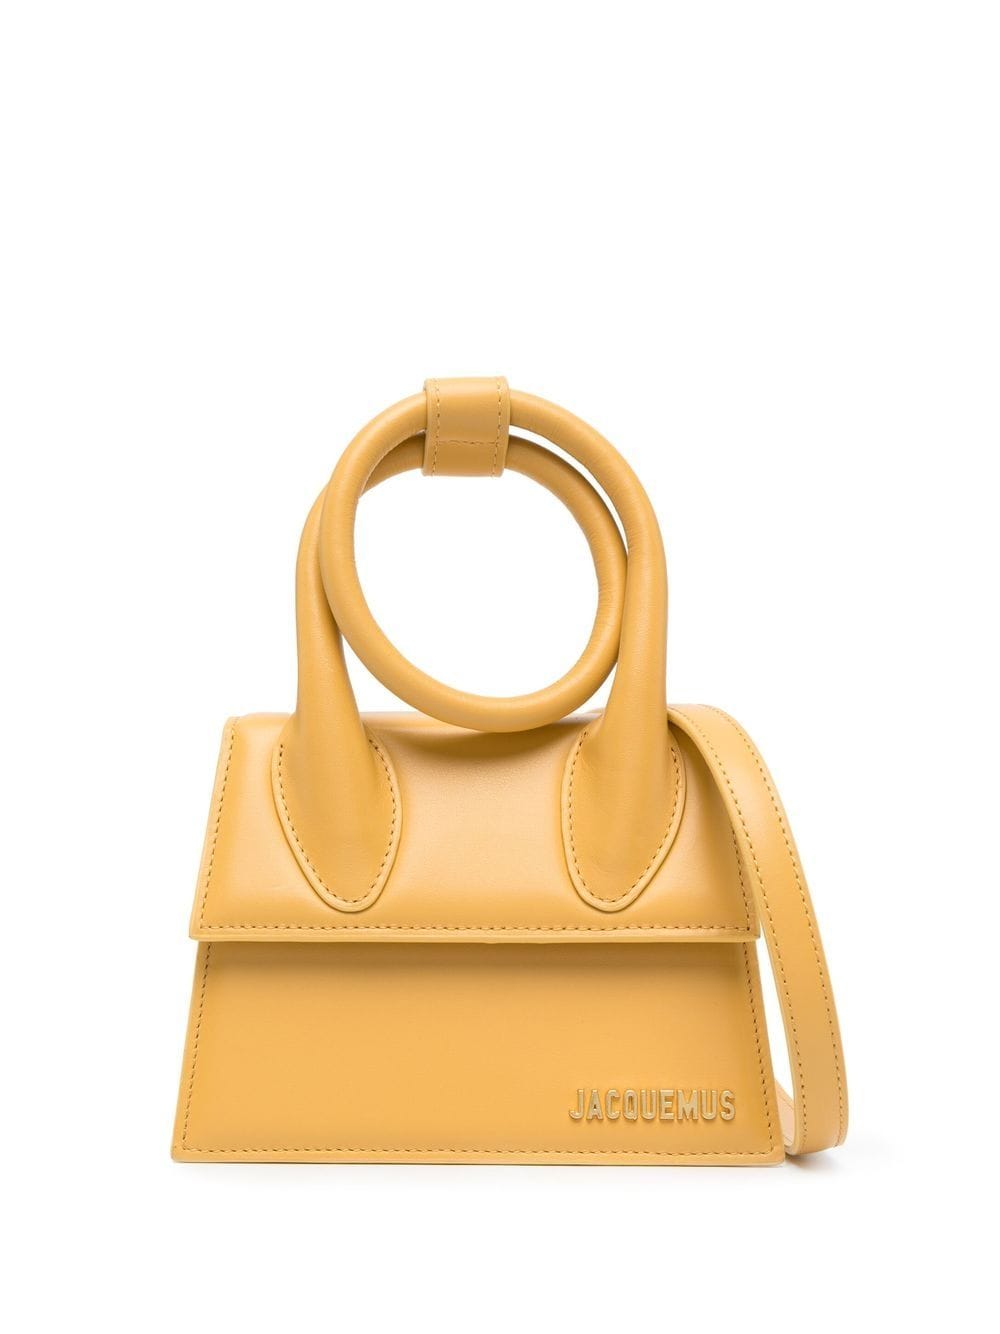 Jacquemus Le Chiquito Nœud Mini Bag In Gelb | ModeSens